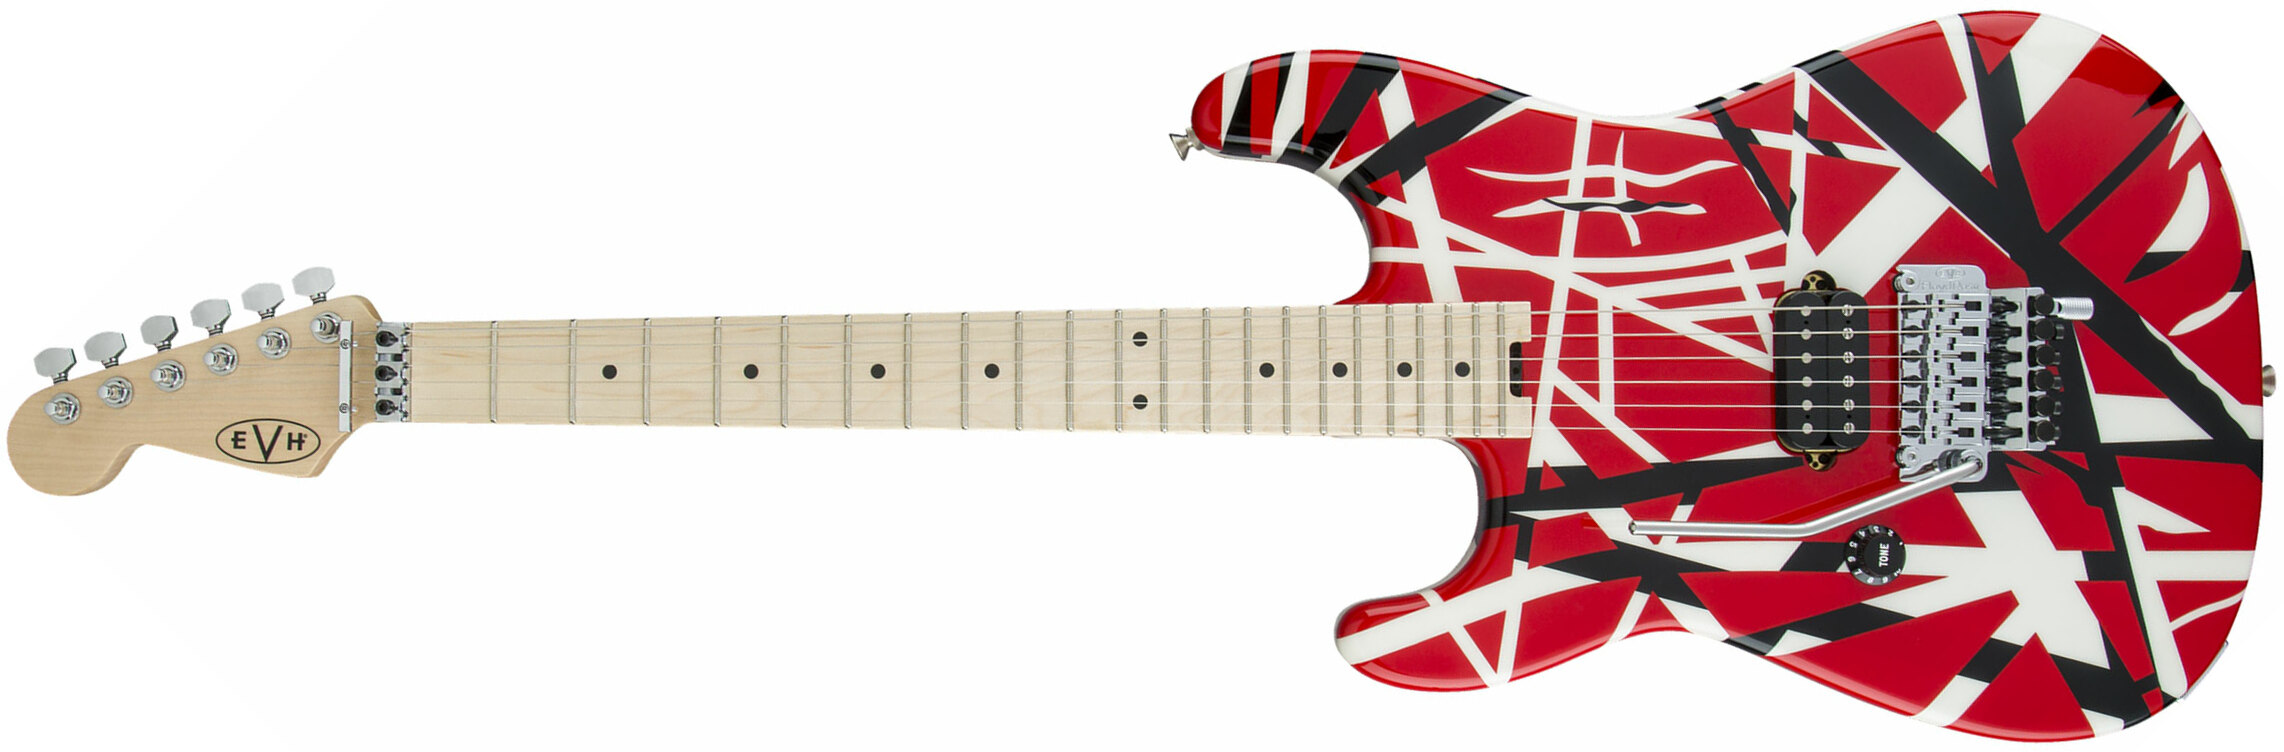 Evh Striped Series Lh Gaucher Signature H Fr Mn - Red Black White Stripes - Linkshandige elektrische gitaar - Main picture